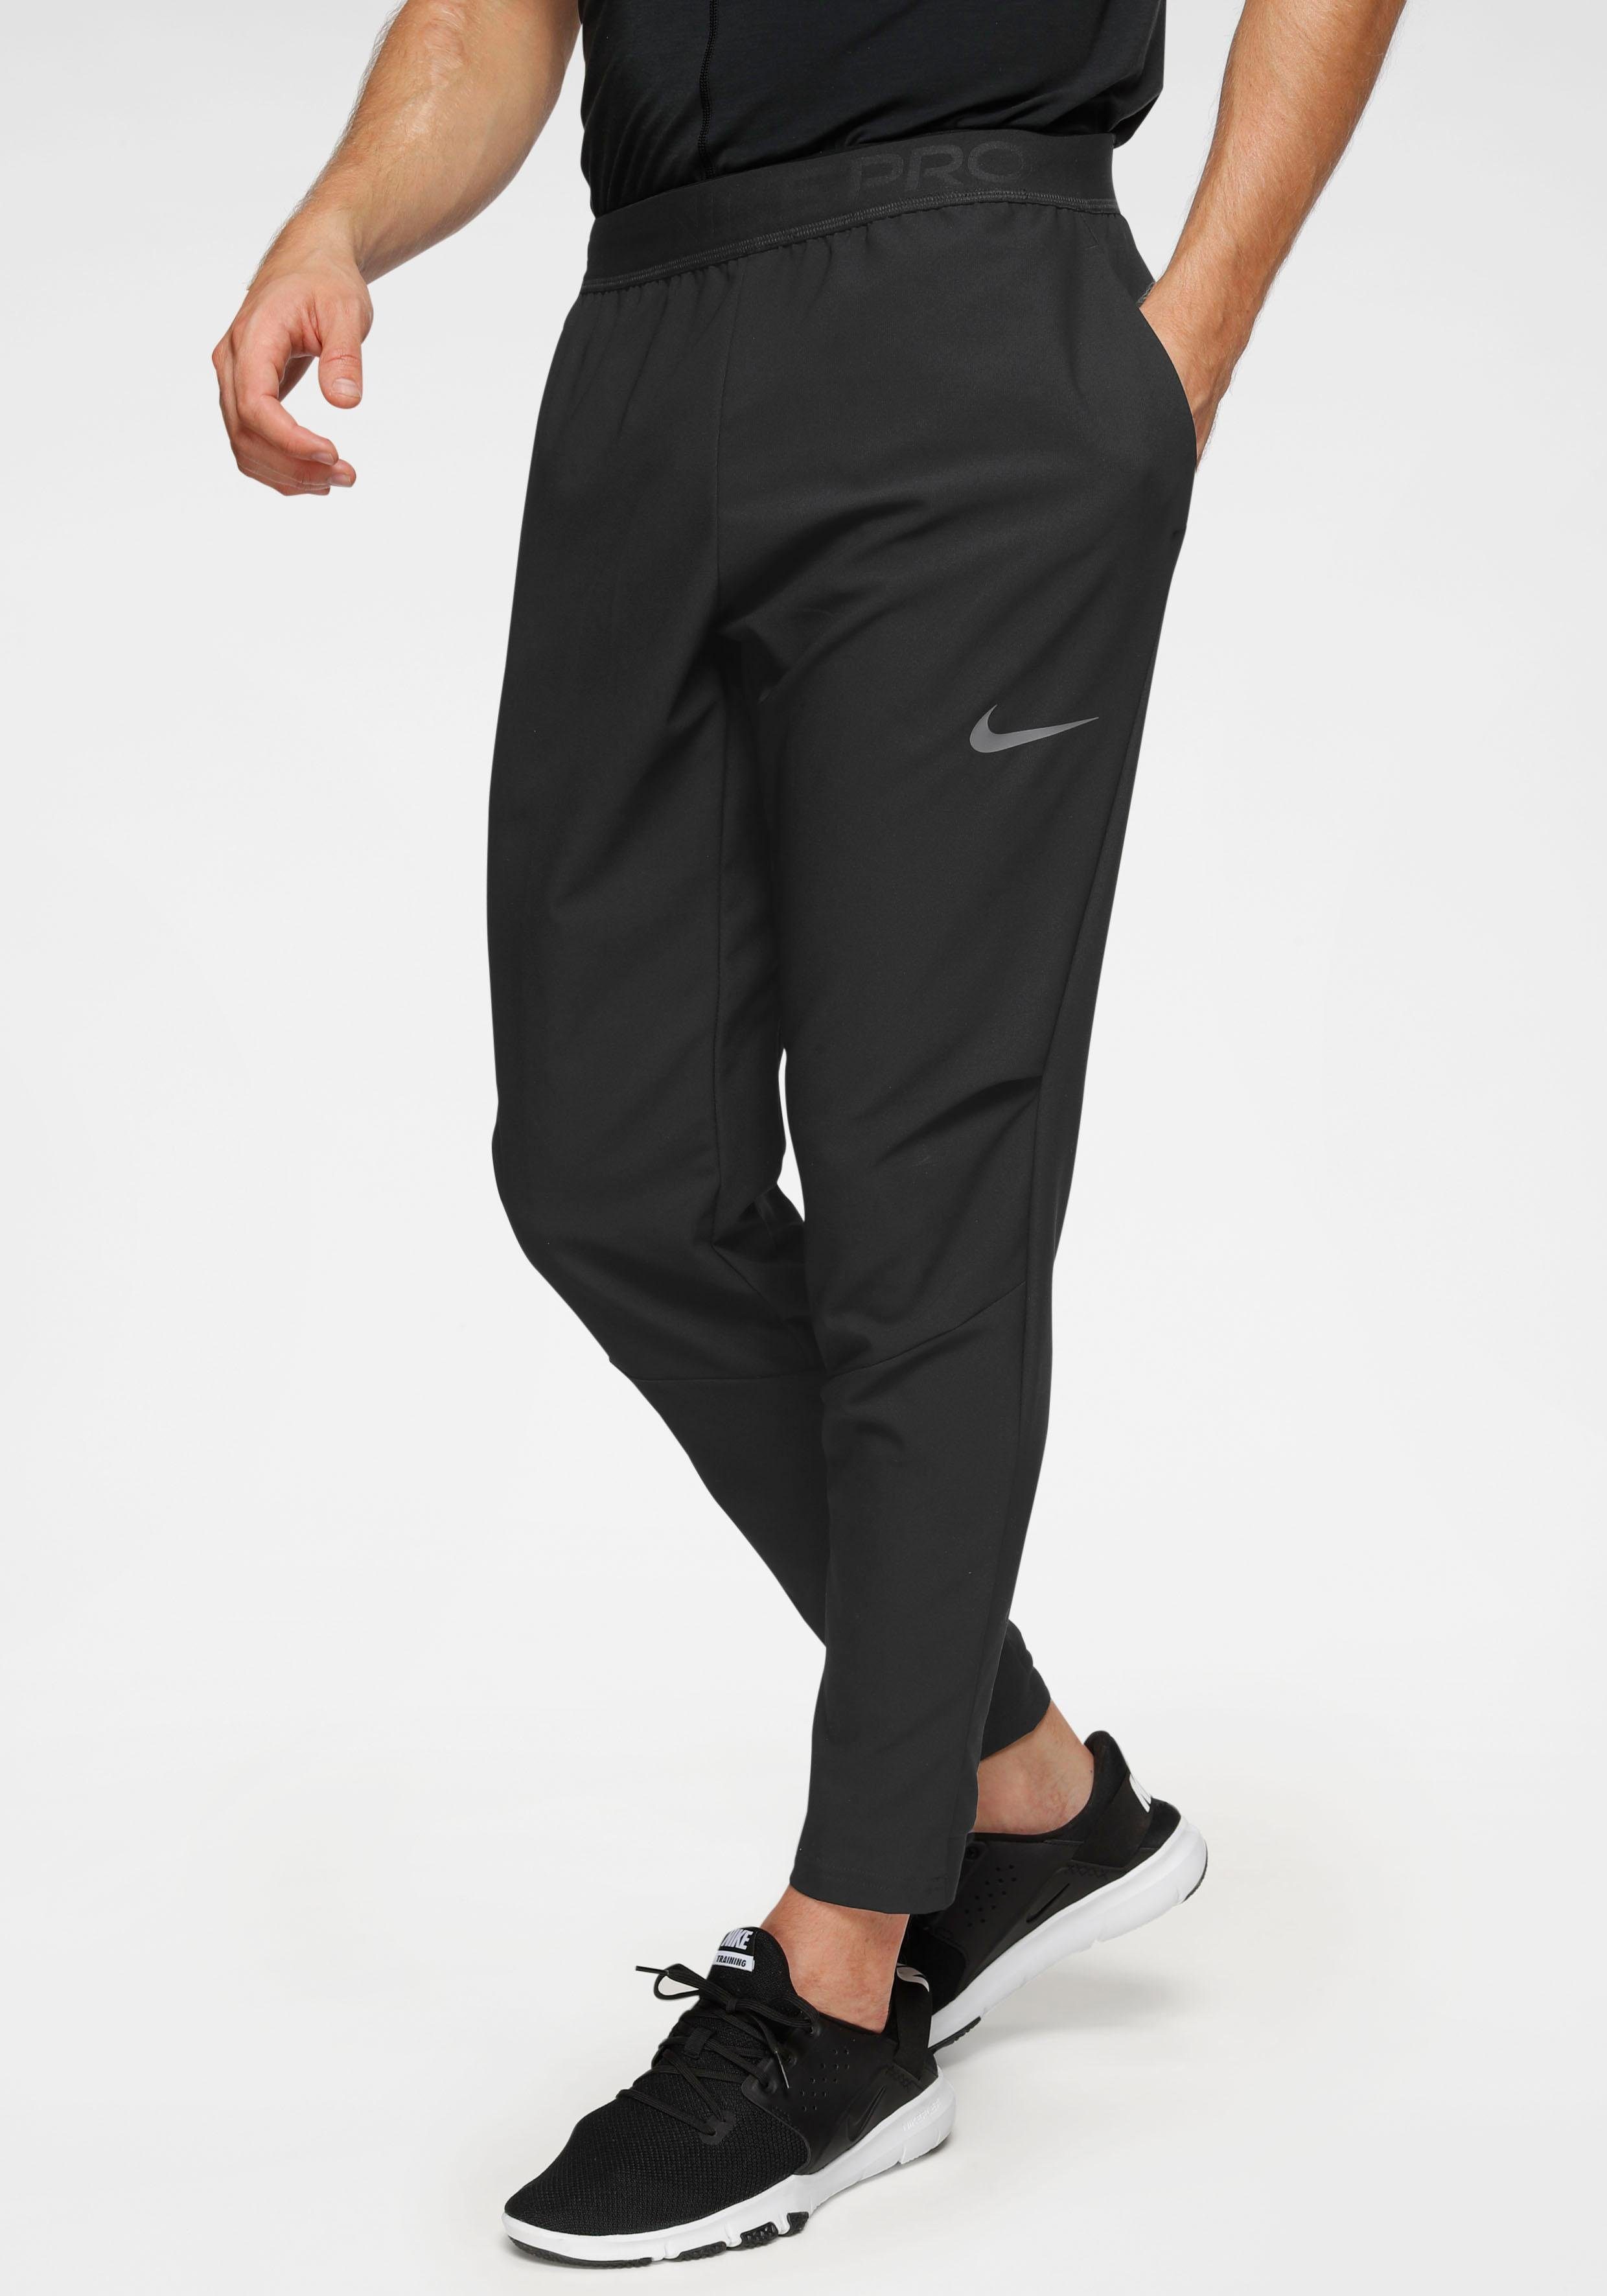 Nike Flex Men's Training Pants 